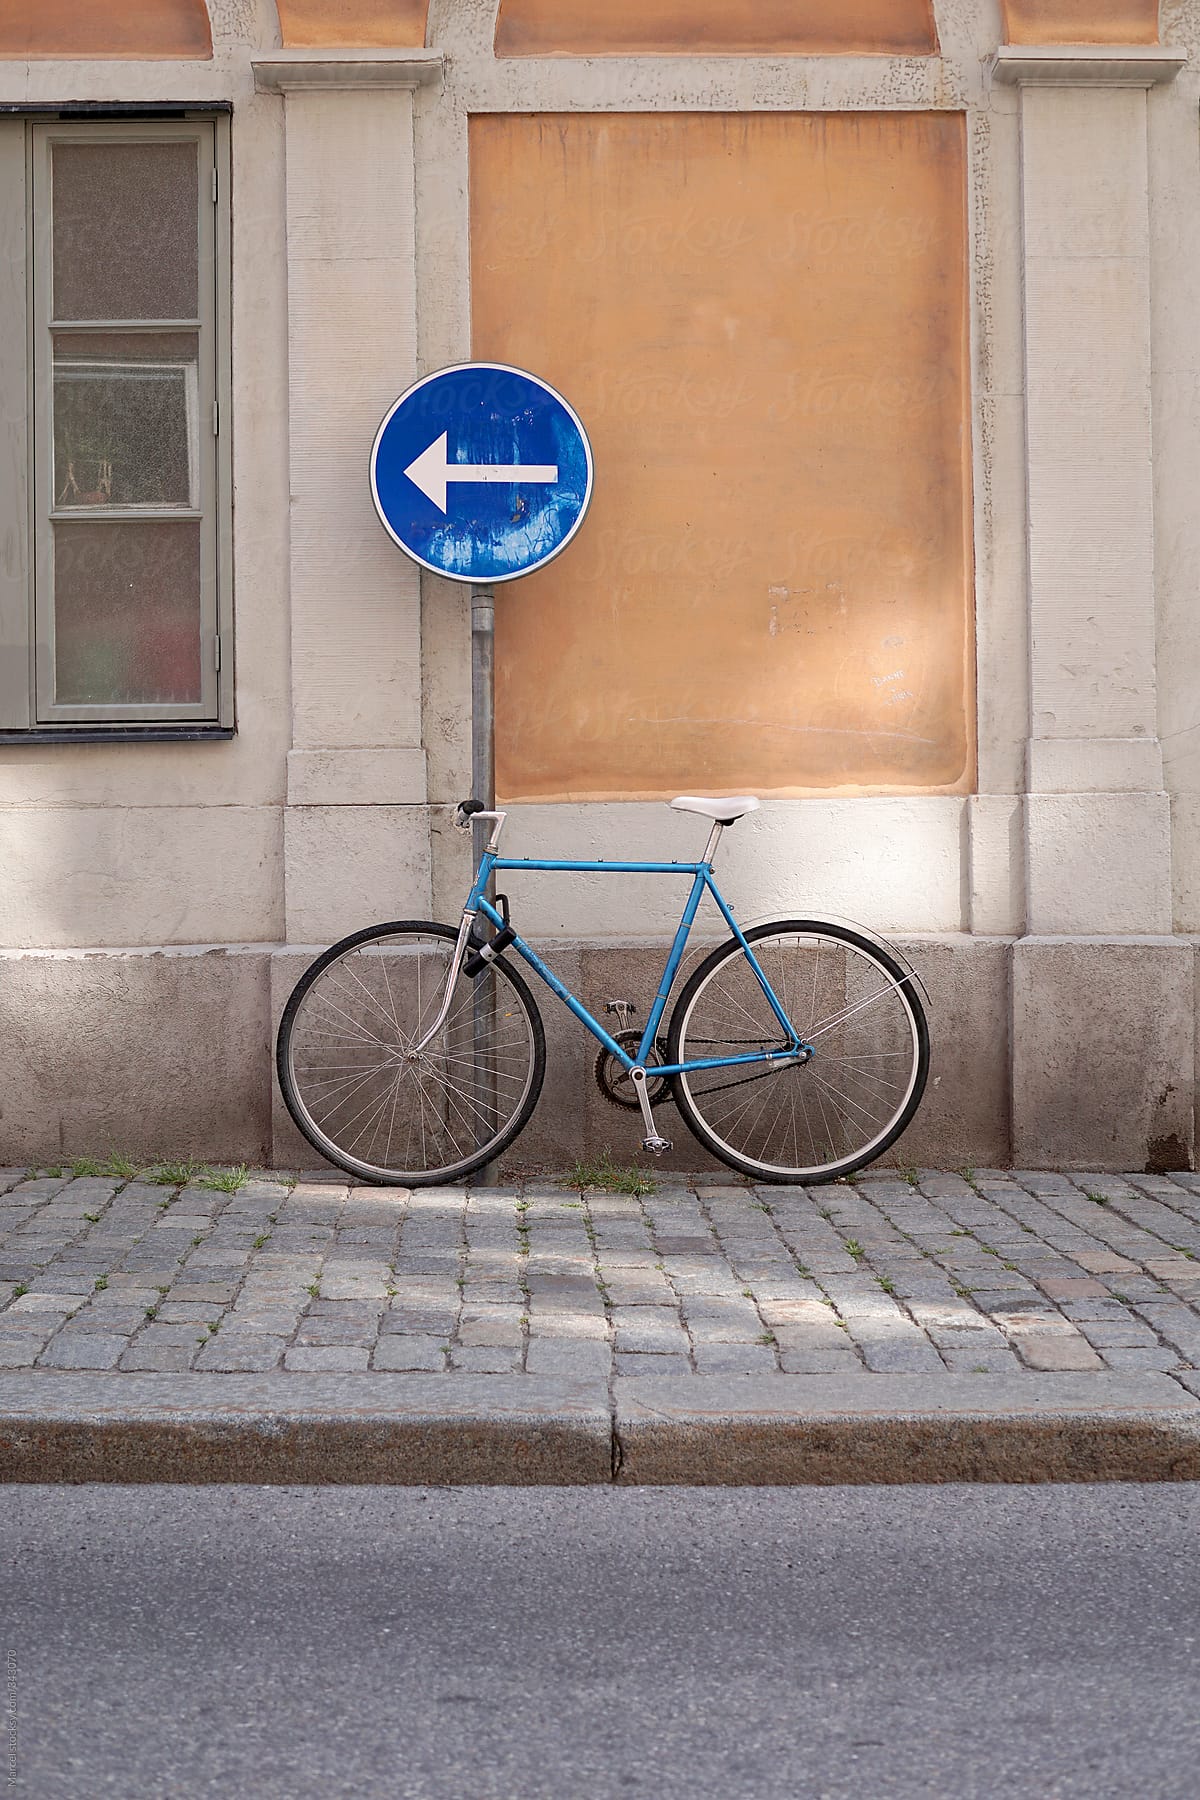 Vintage bike parked on a street in Stockholm